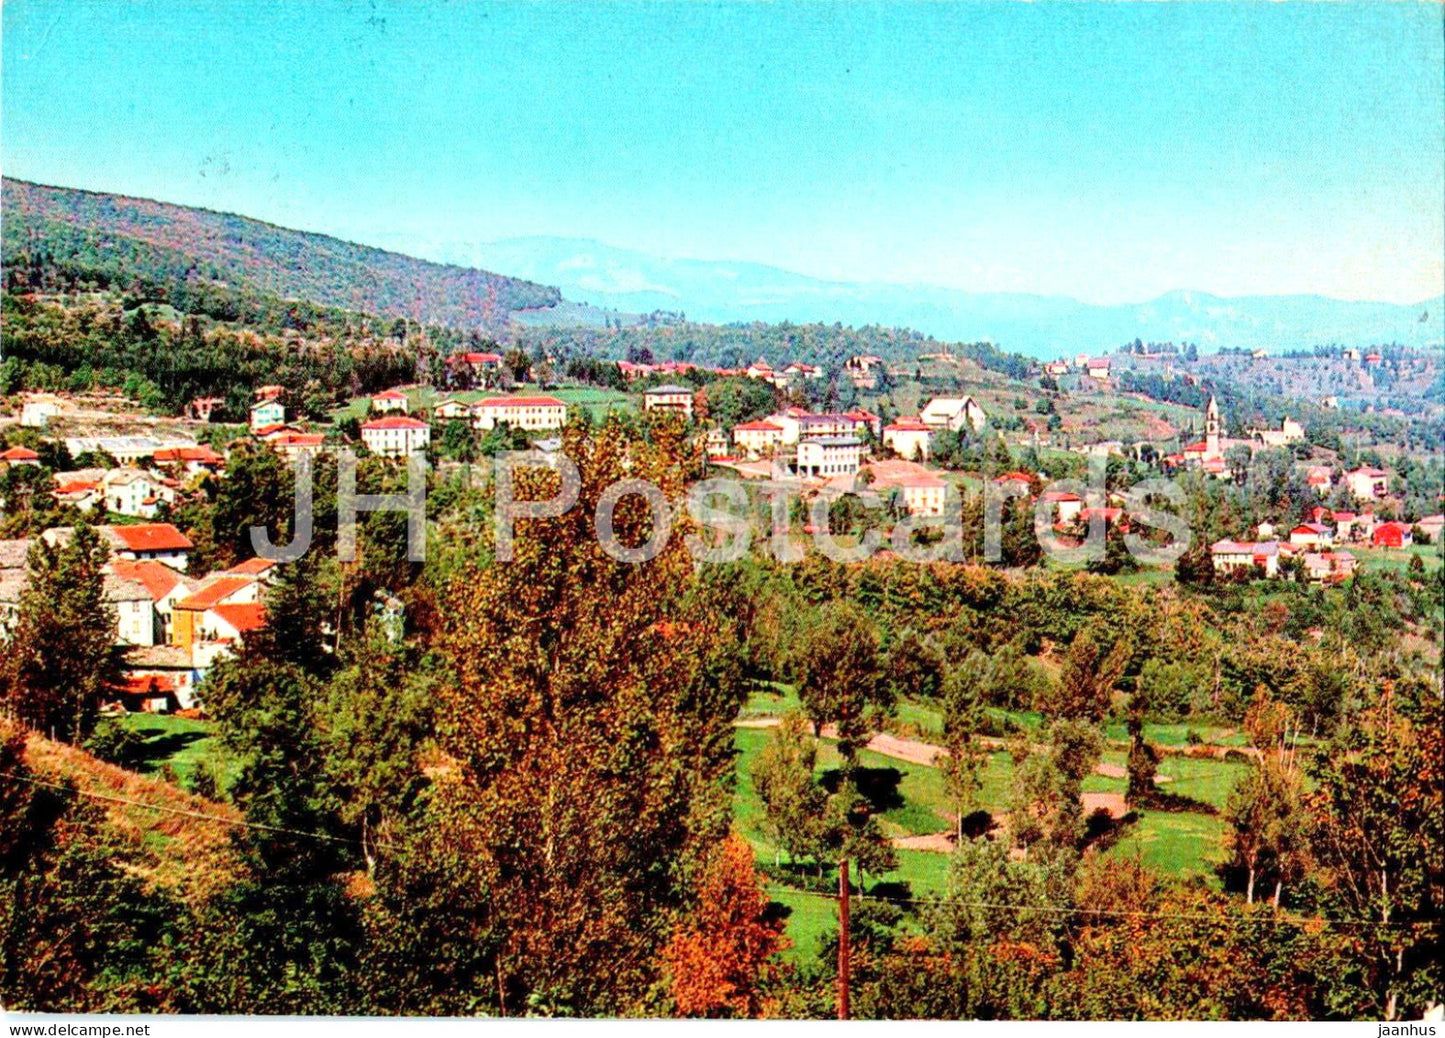 Tarsogno - 830 m - panorama - Stazione climatica - 1977 - Italy - used - JH Postcards